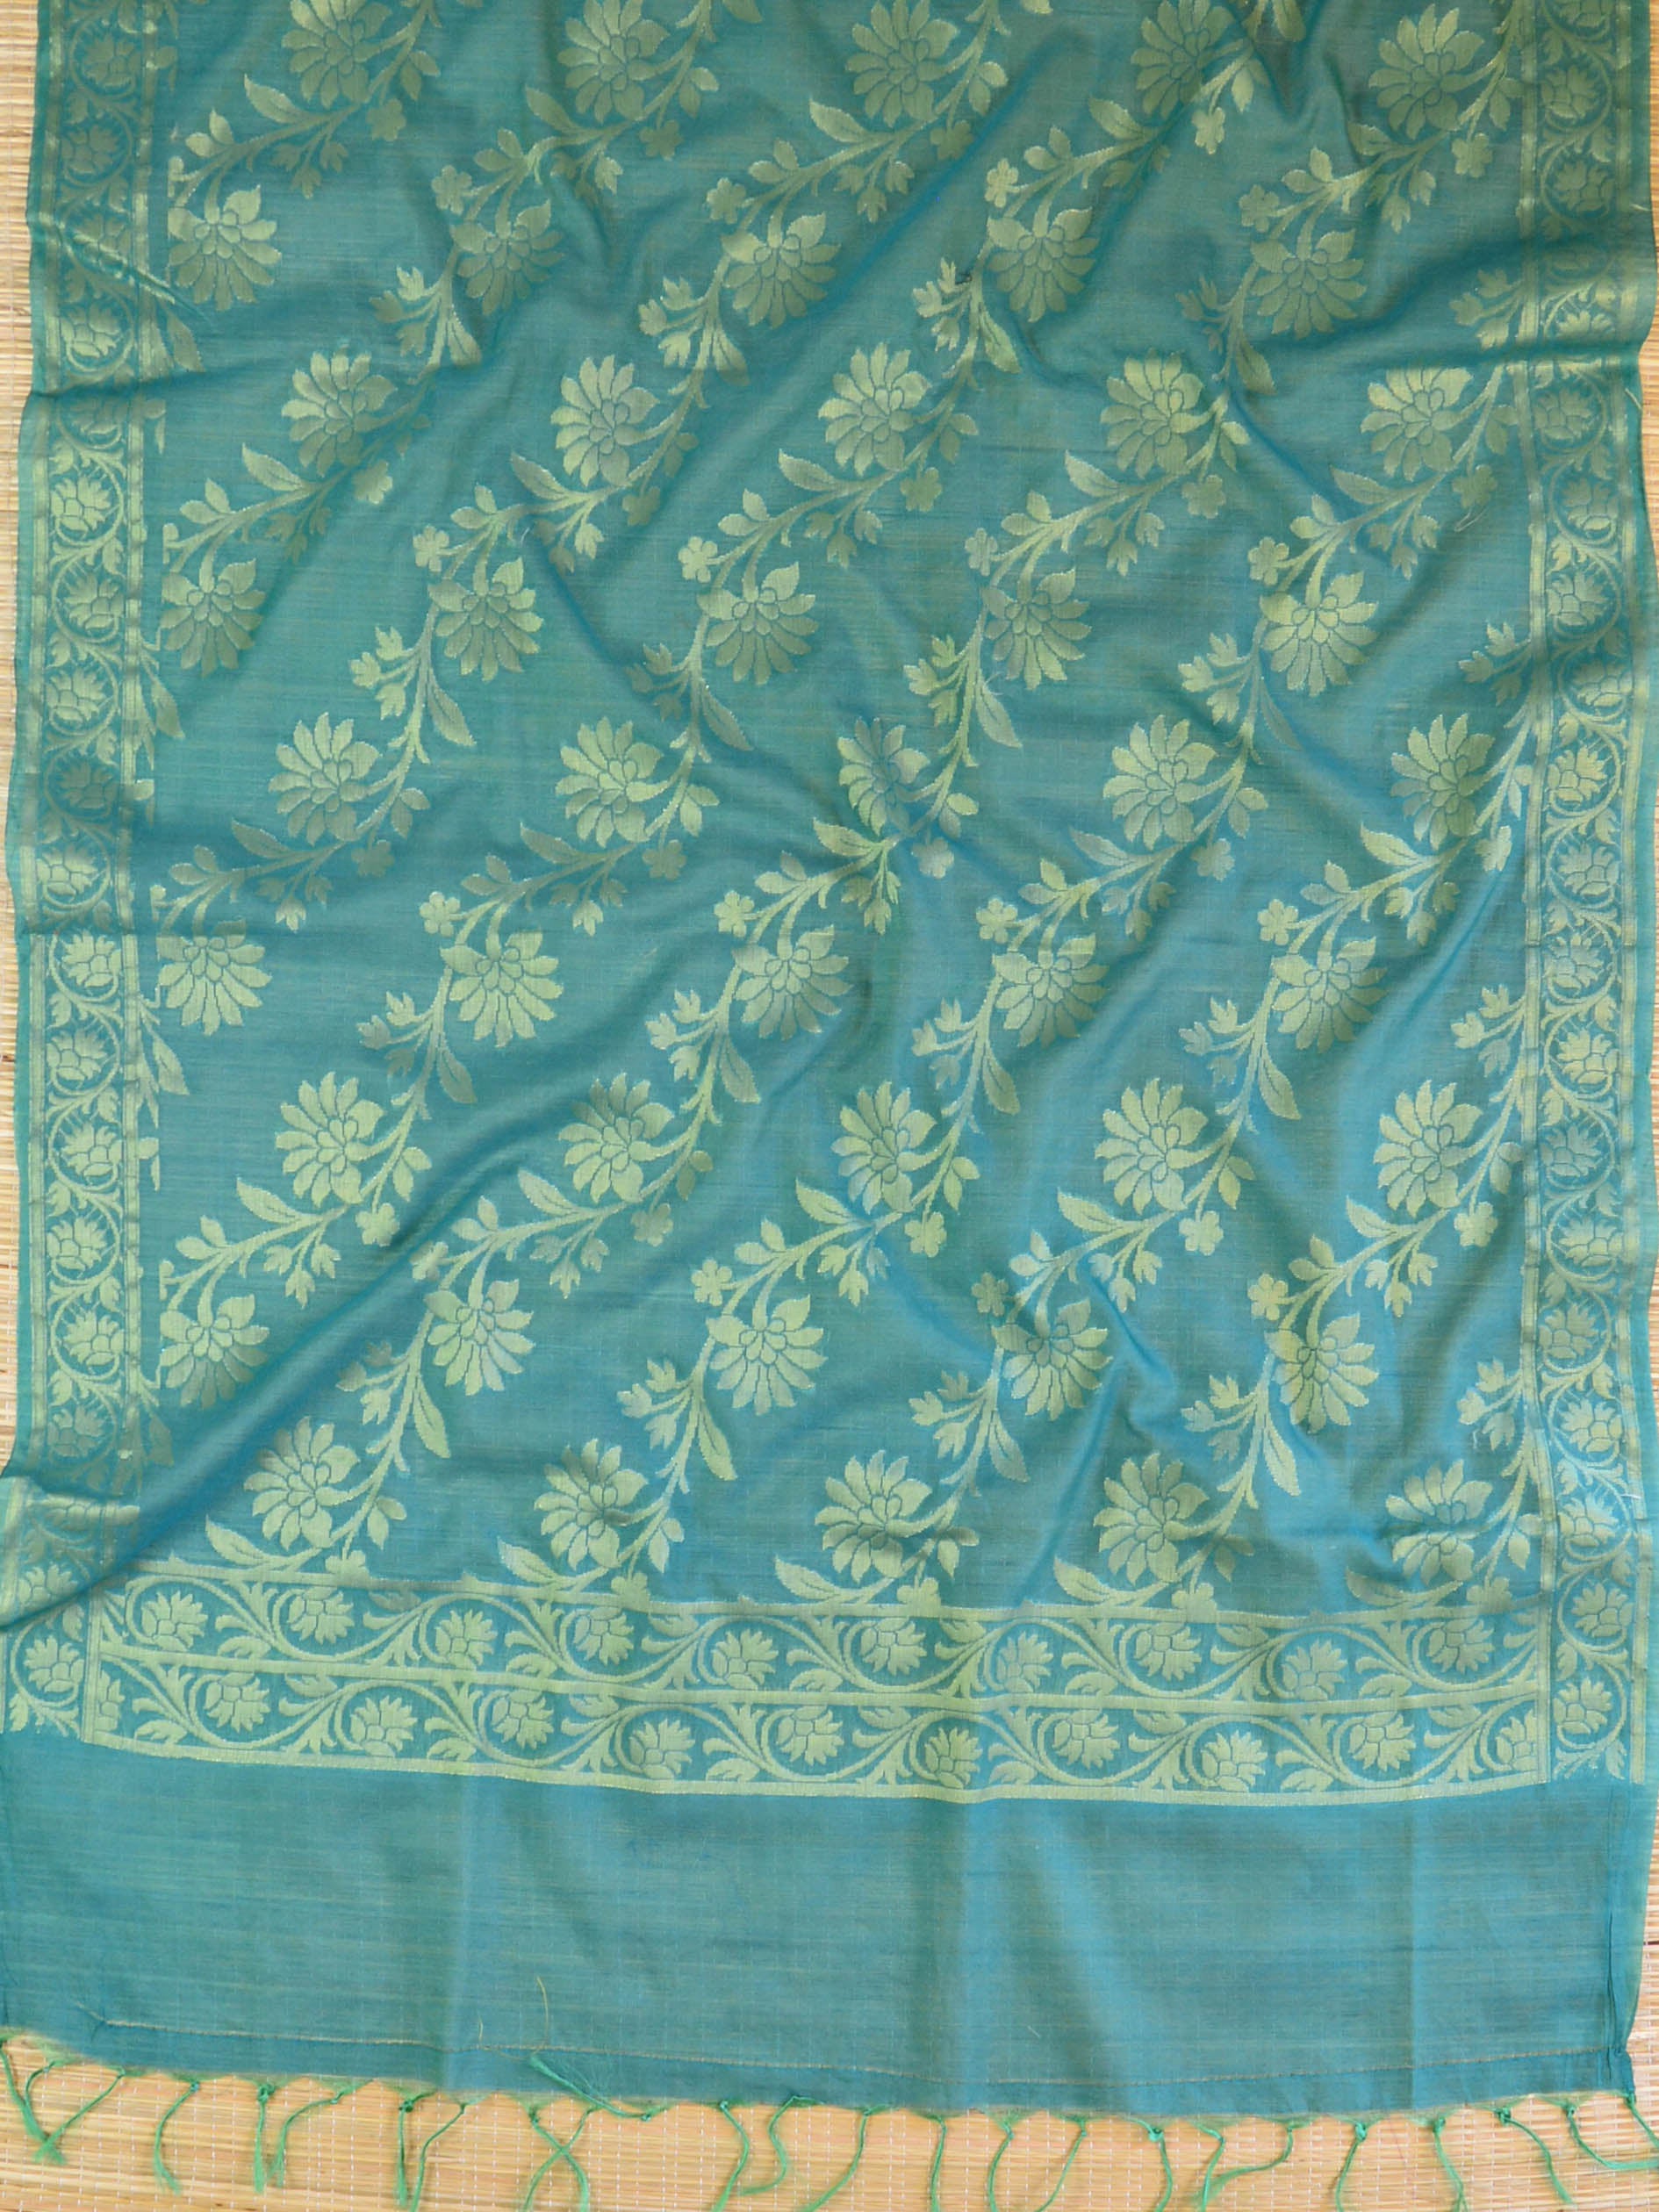 Banarasee Cotton Silk Zari Jaal Dupatta-Green